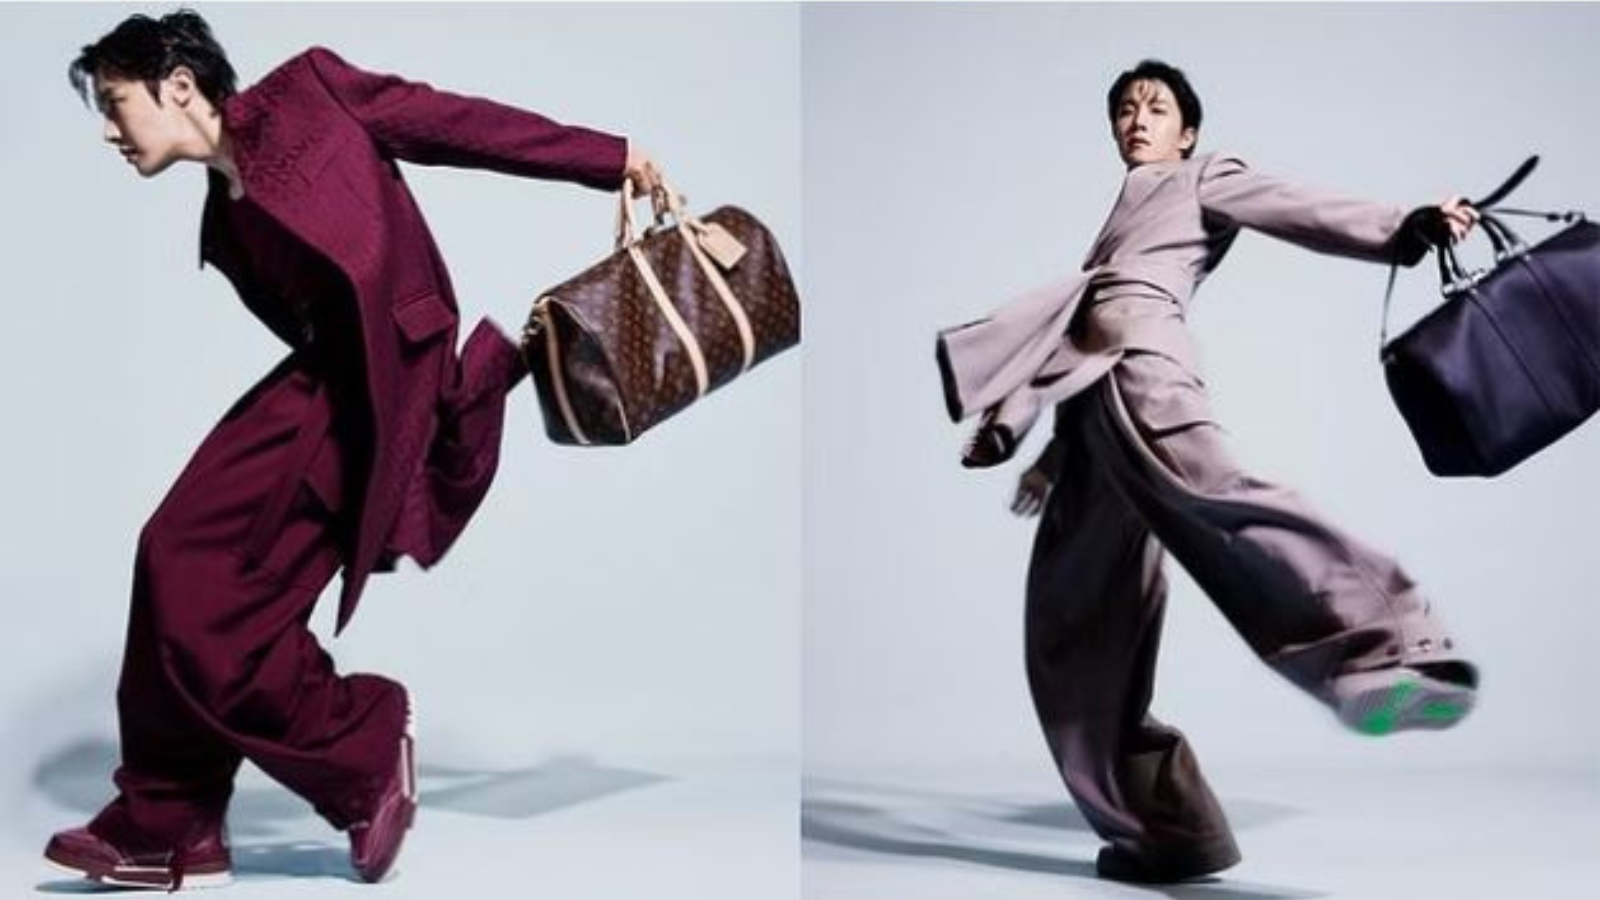 The Louis Vuitton Global Brand Ambassador! #newjeans #hyein